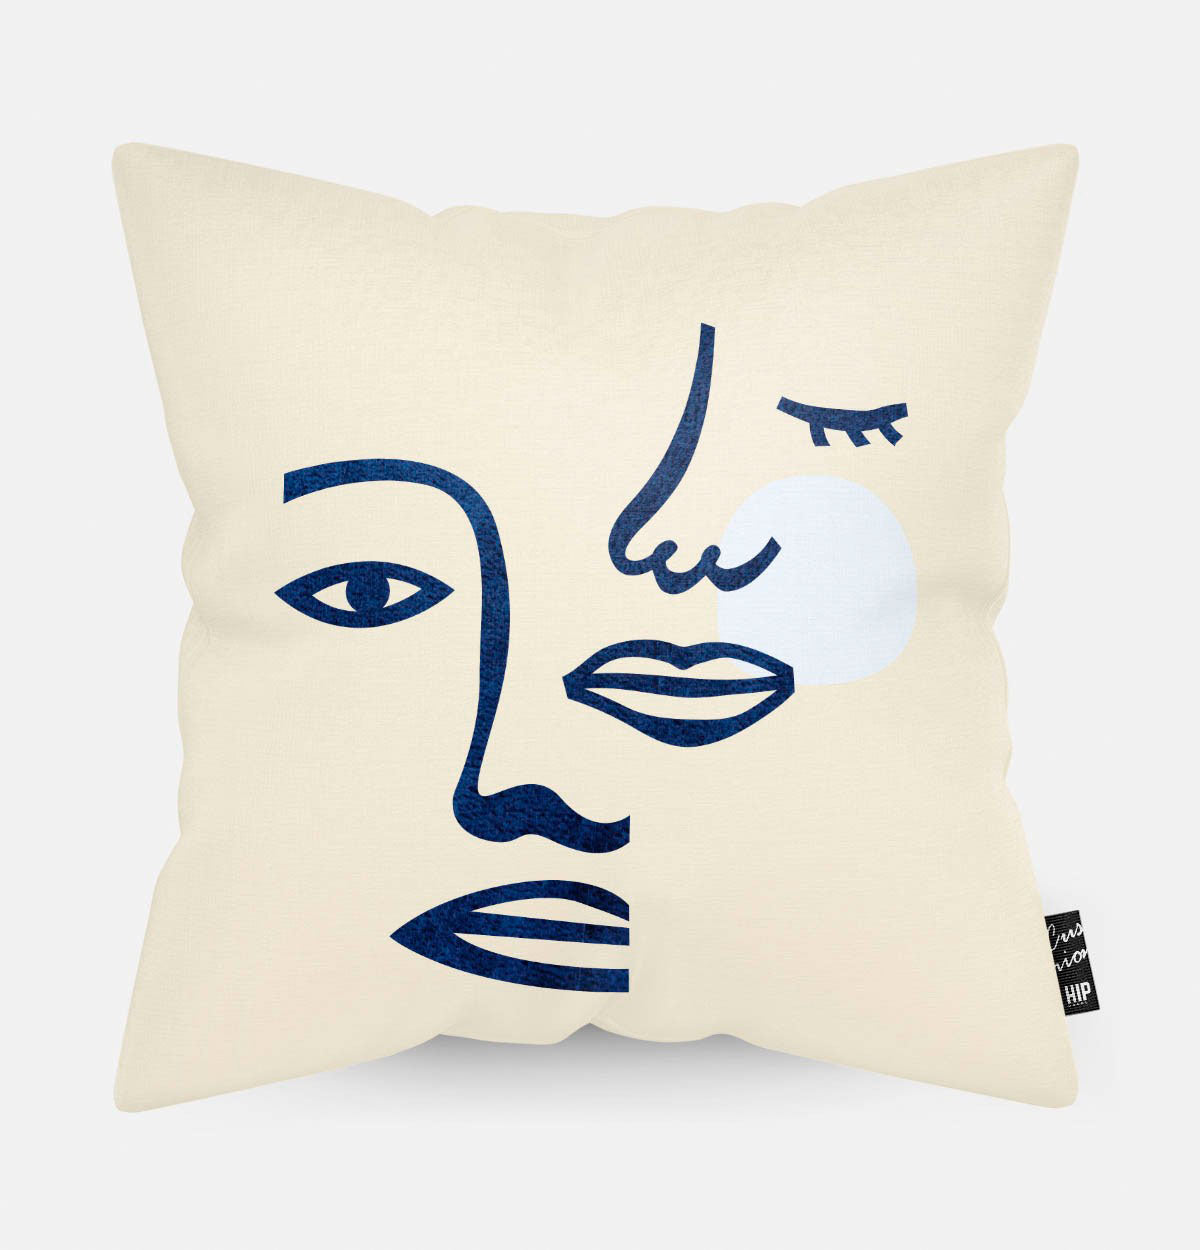 Kussen met line art met open en gesloten gezichten erop afgebeeld in abstracte vorm.